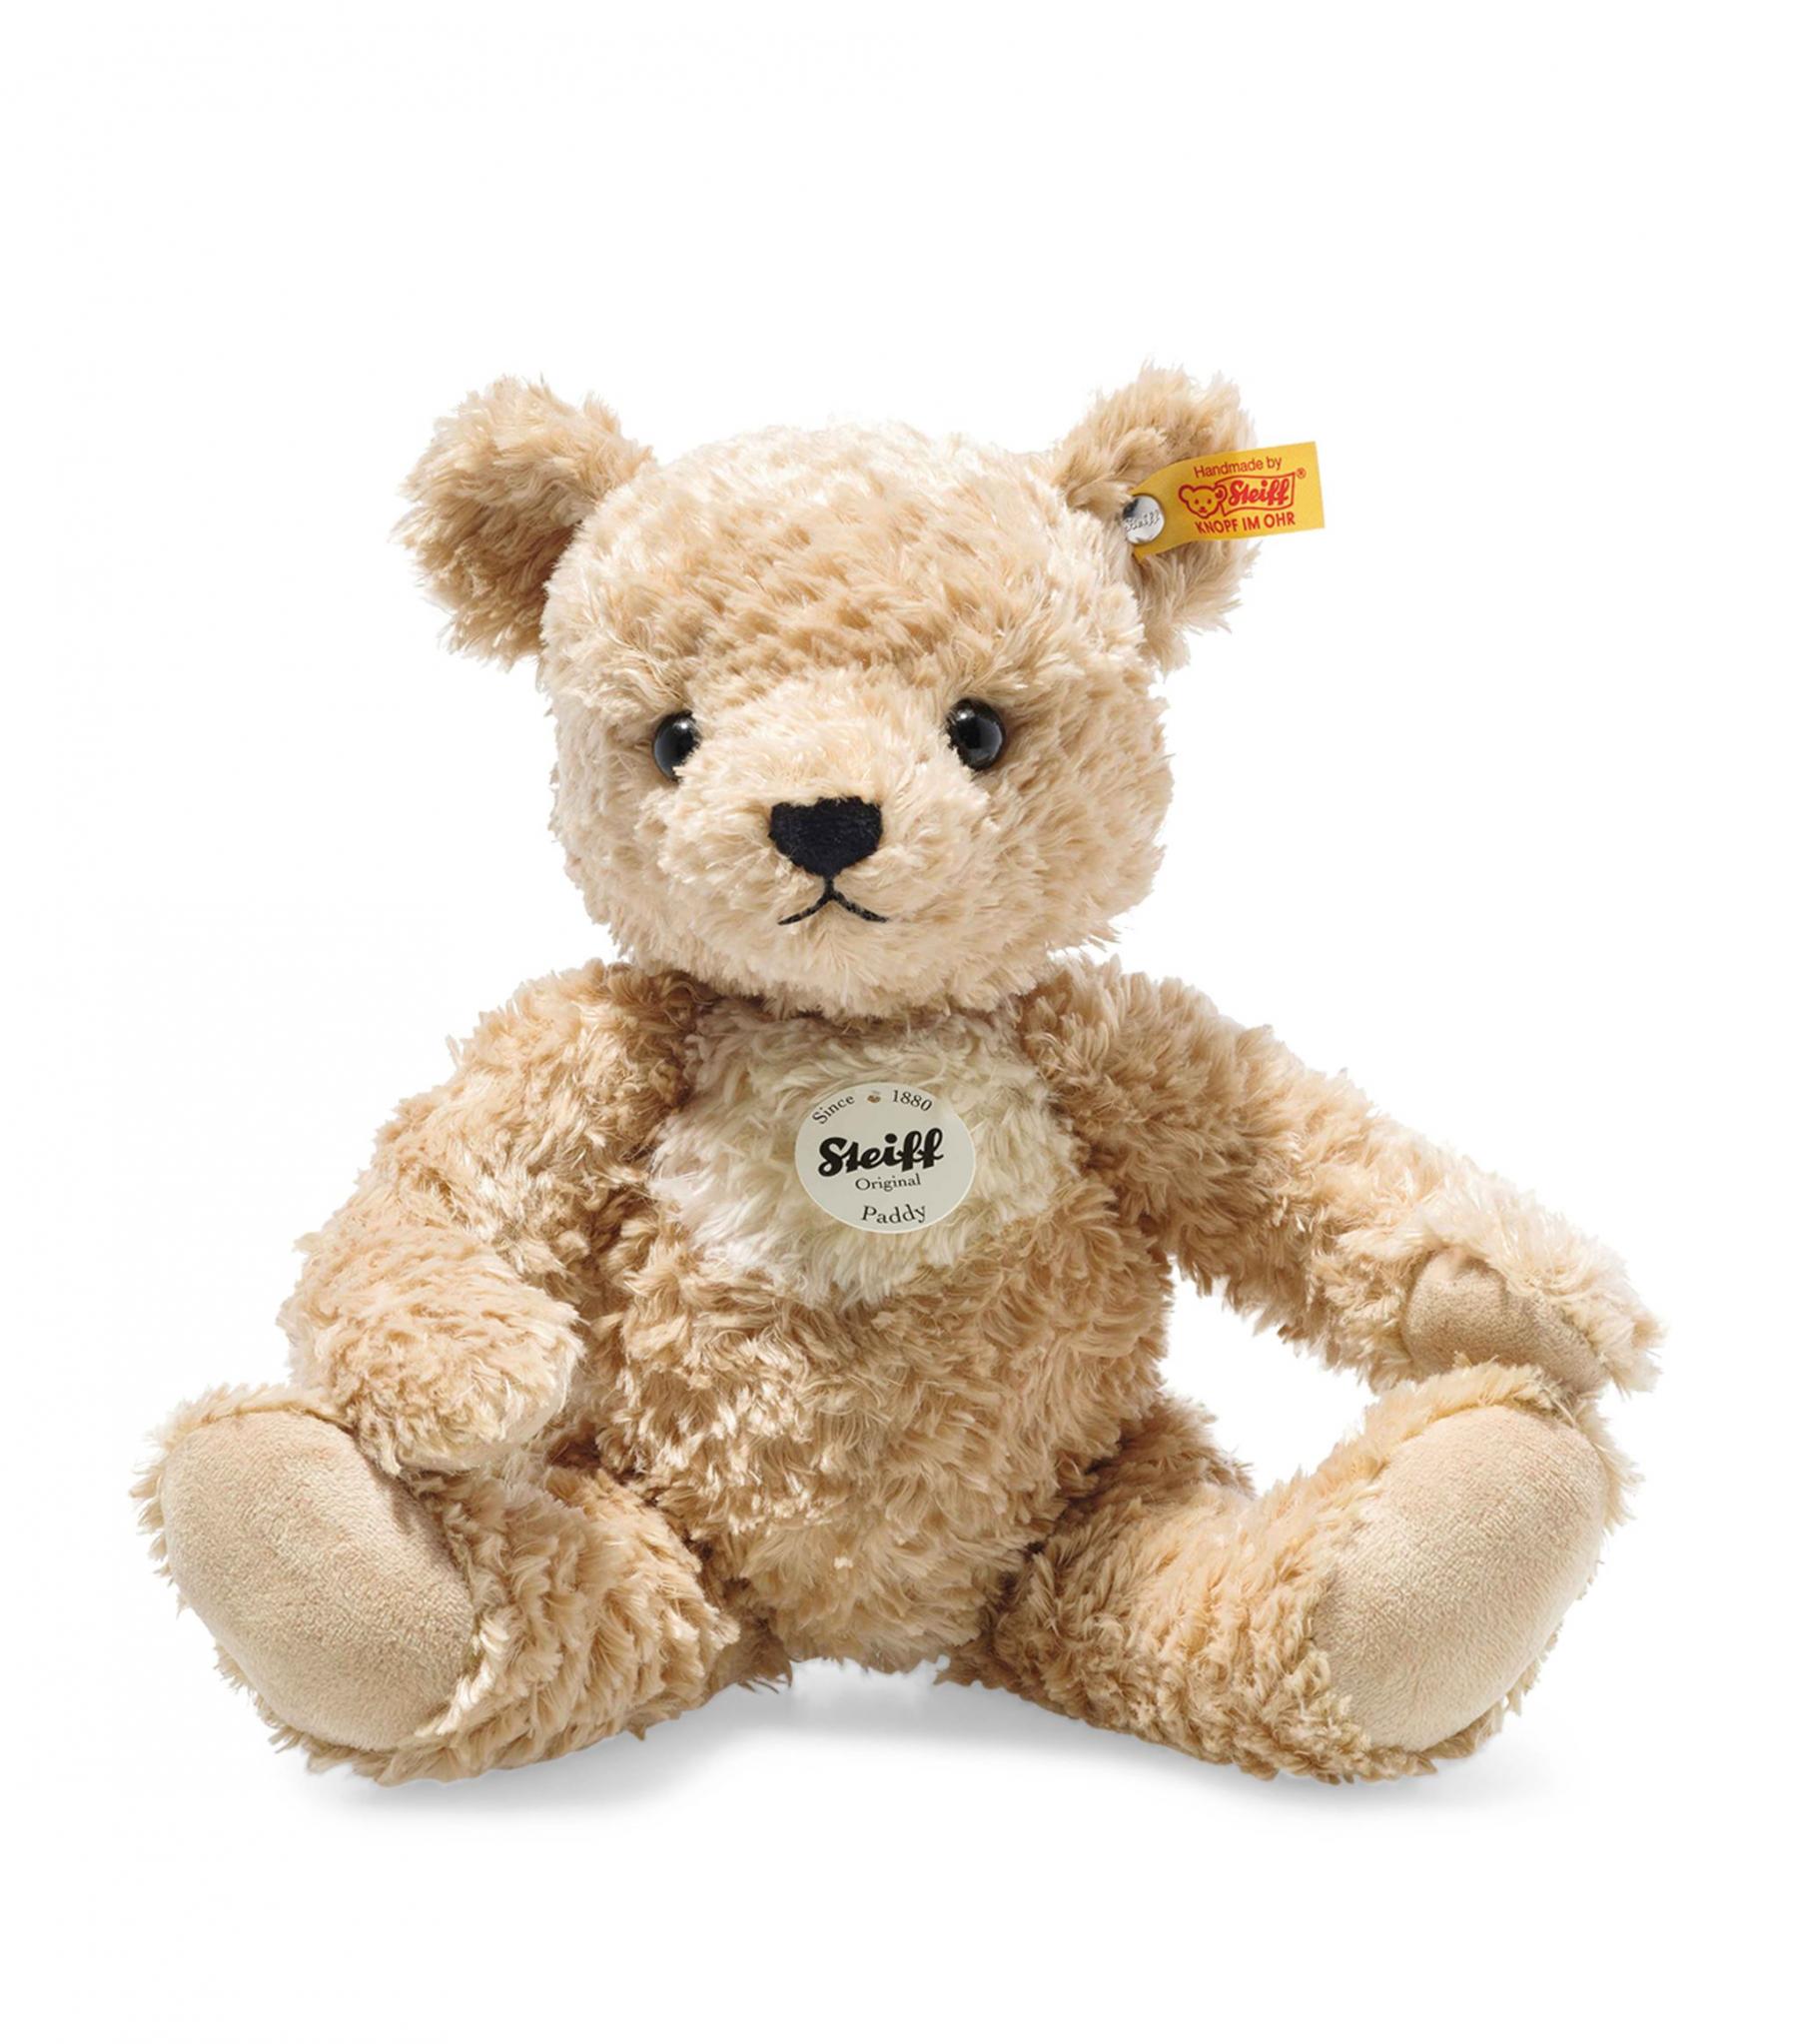 Sutffed teddy bear - best german toy